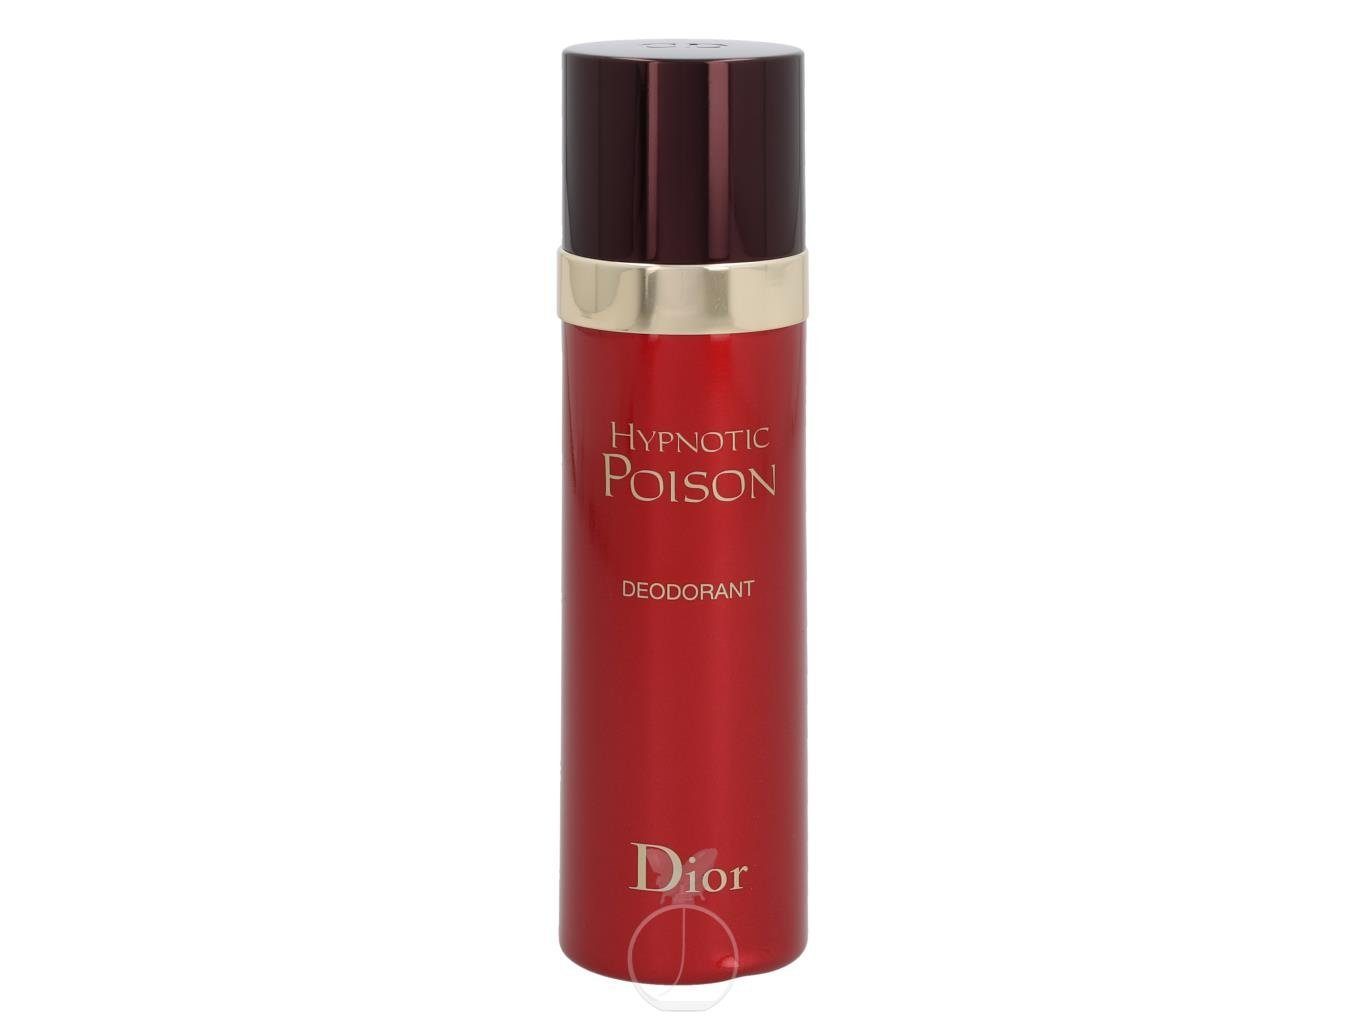 Dior Körperpflegeduft Dior Hypnotic Deodorant ml Poison 100